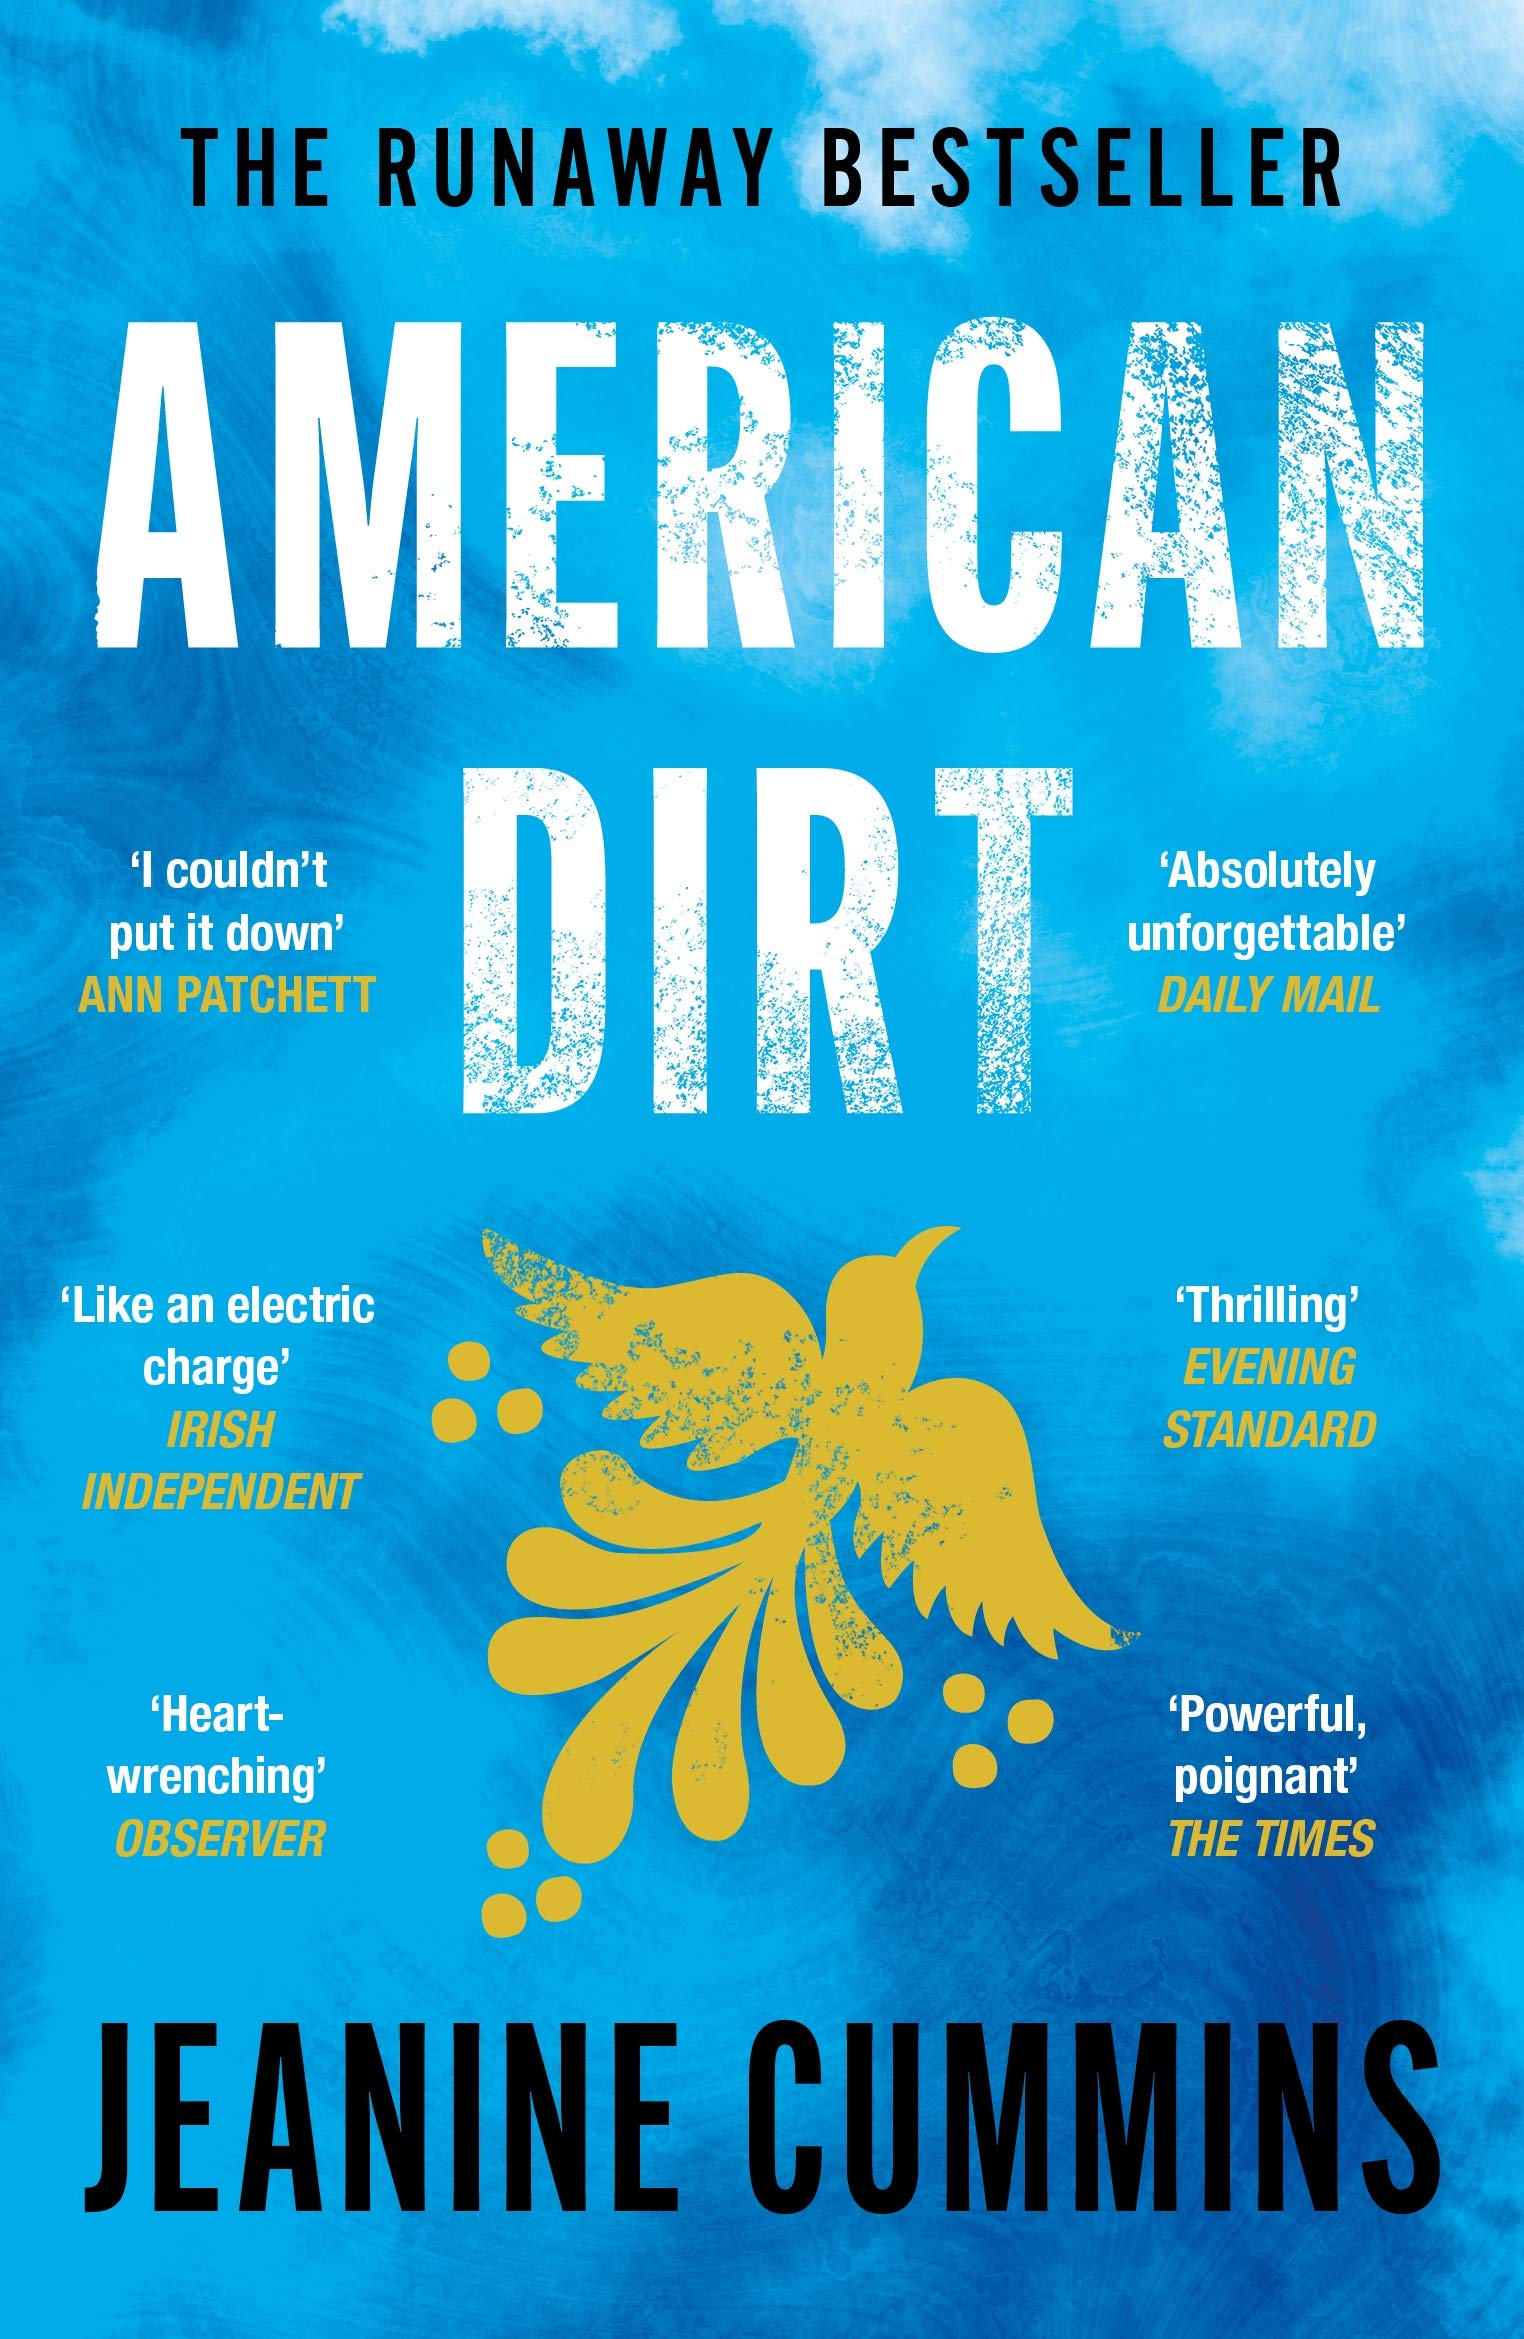 American Dirt | Jeanine Cummins